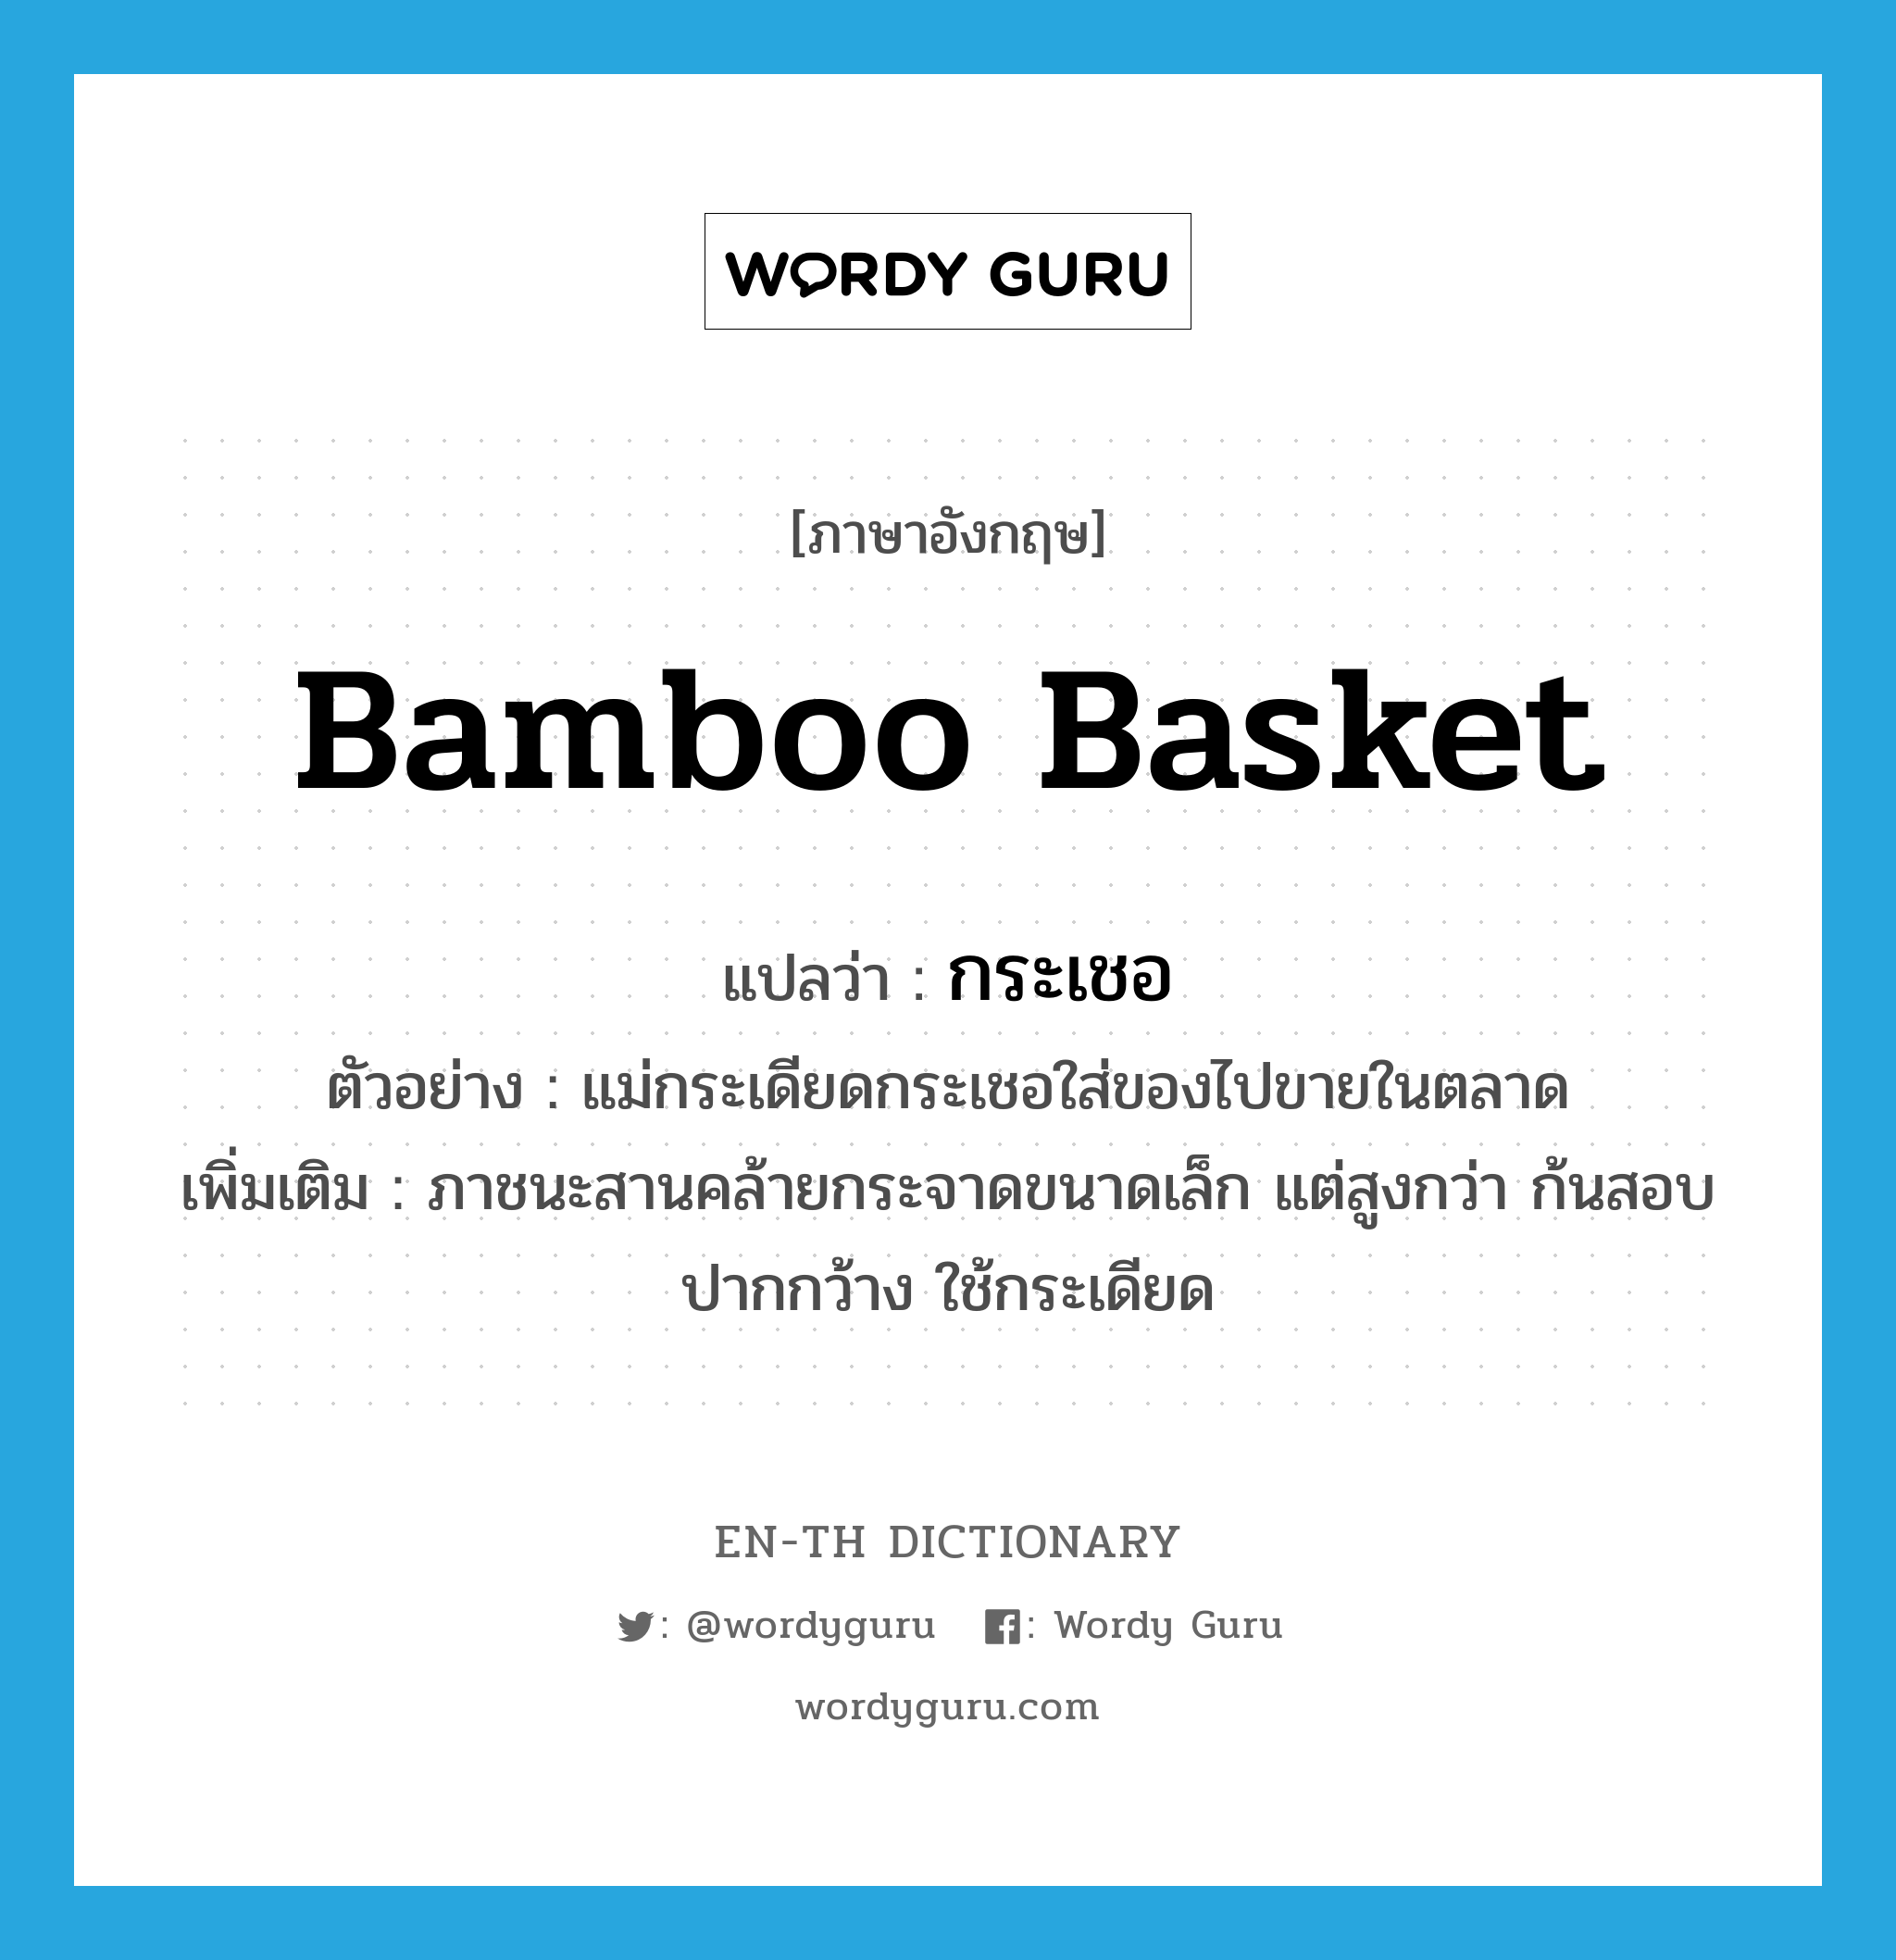 กระเชอ ภาษาอังกฤษ?, คำศัพท์ภาษาอังกฤษ กระเชอ แปลว่า bamboo basket ประเภท N ตัวอย่าง แม่กระเดียดกระเชอใส่ของไปขายในตลาด เพิ่มเติม ภาชนะสานคล้ายกระจาดขนาดเล็ก แต่สูงกว่า ก้นสอบ ปากกว้าง ใช้กระเดียด หมวด N